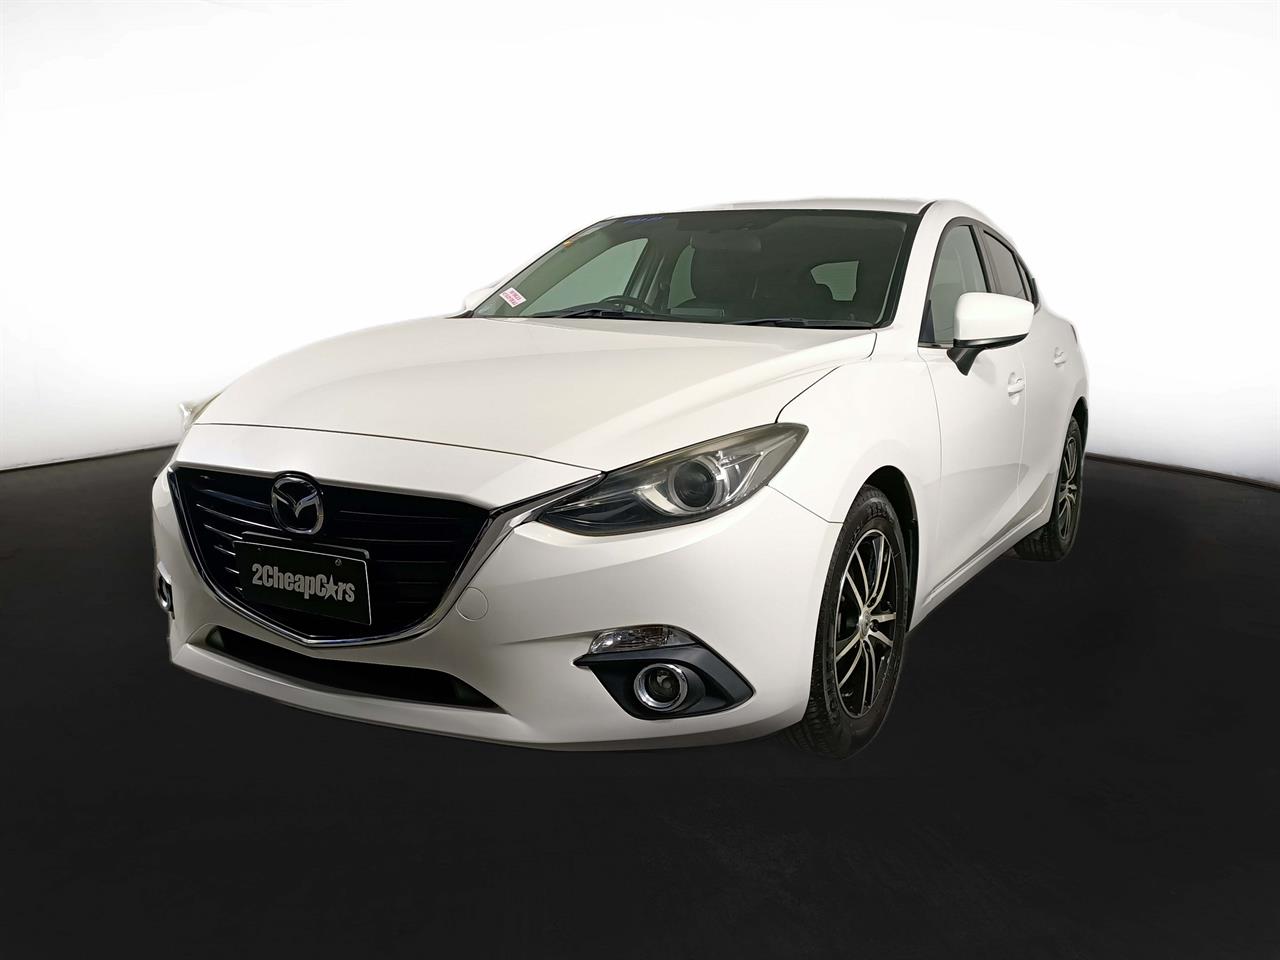 2013 Mazda Axela 3 Late Shape 1.5